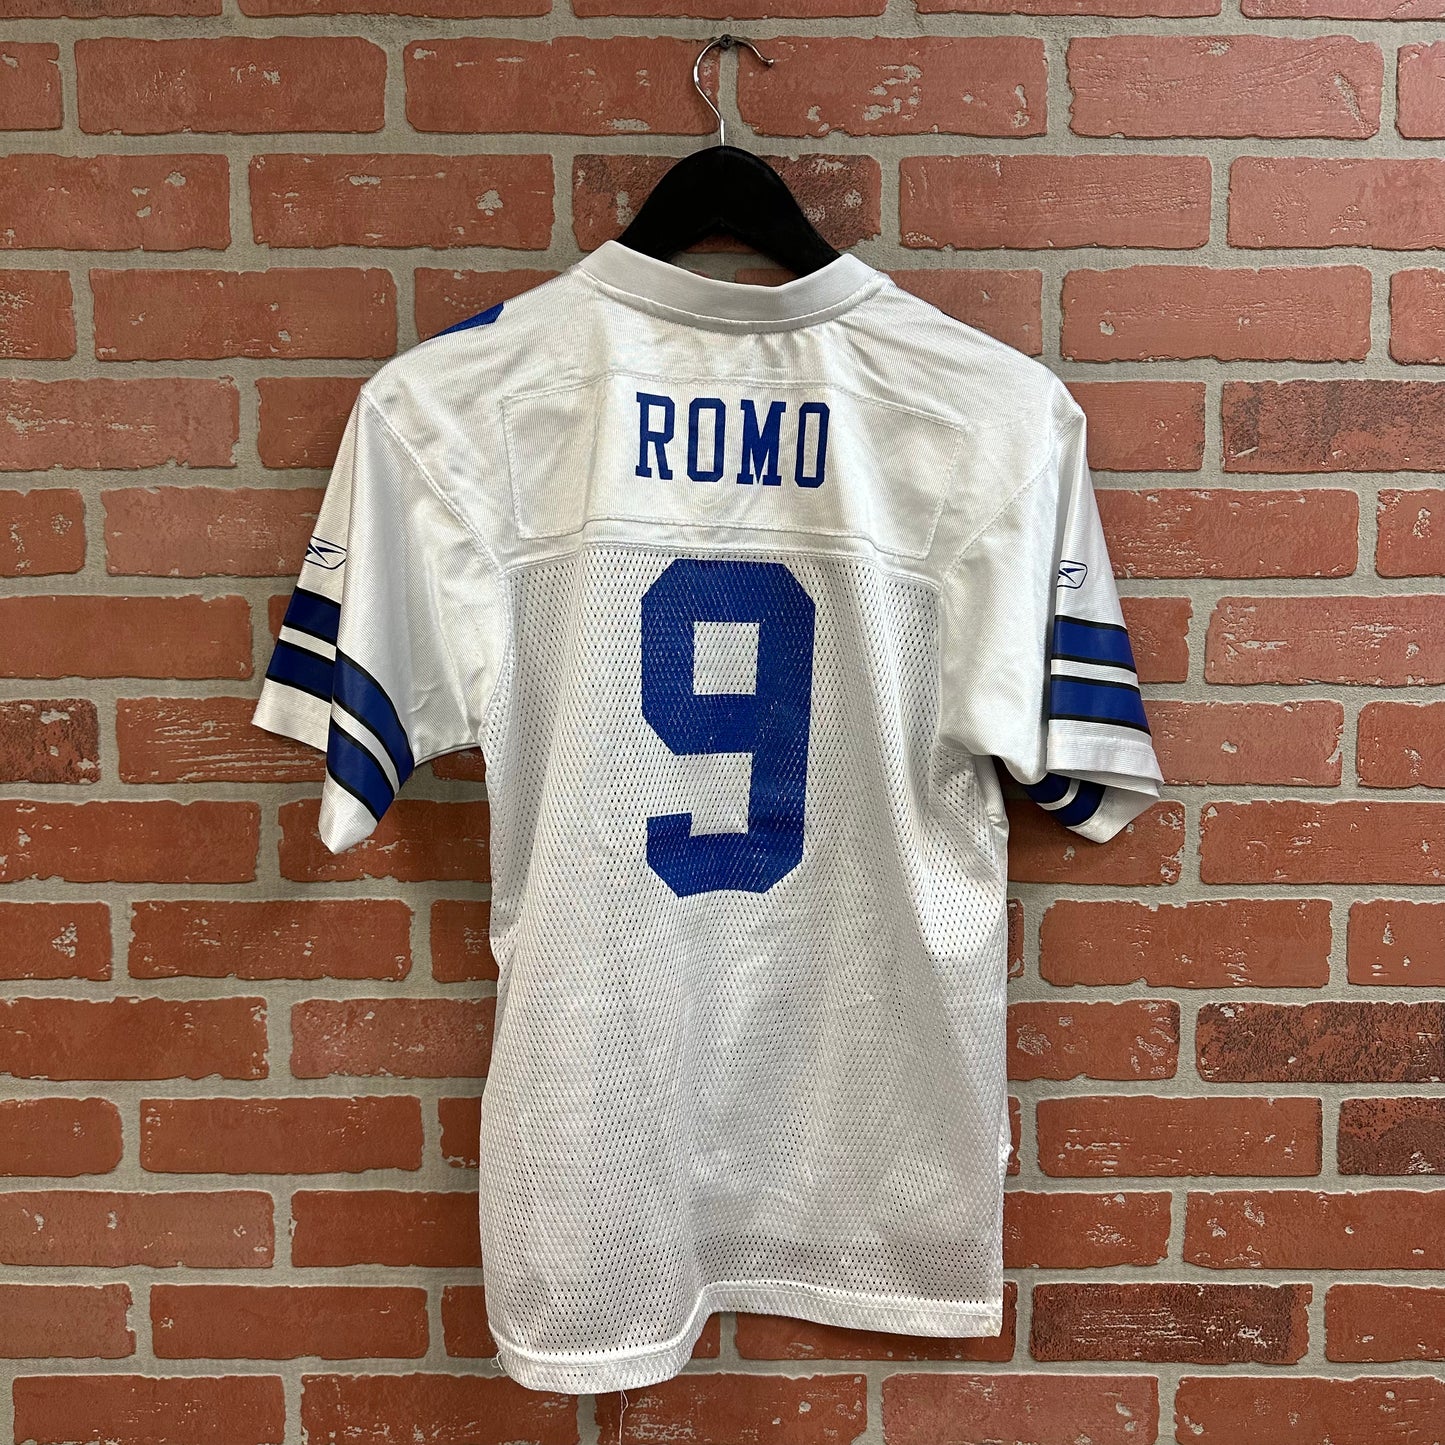 VTG Youth Cowboys Tony Romo Jersey